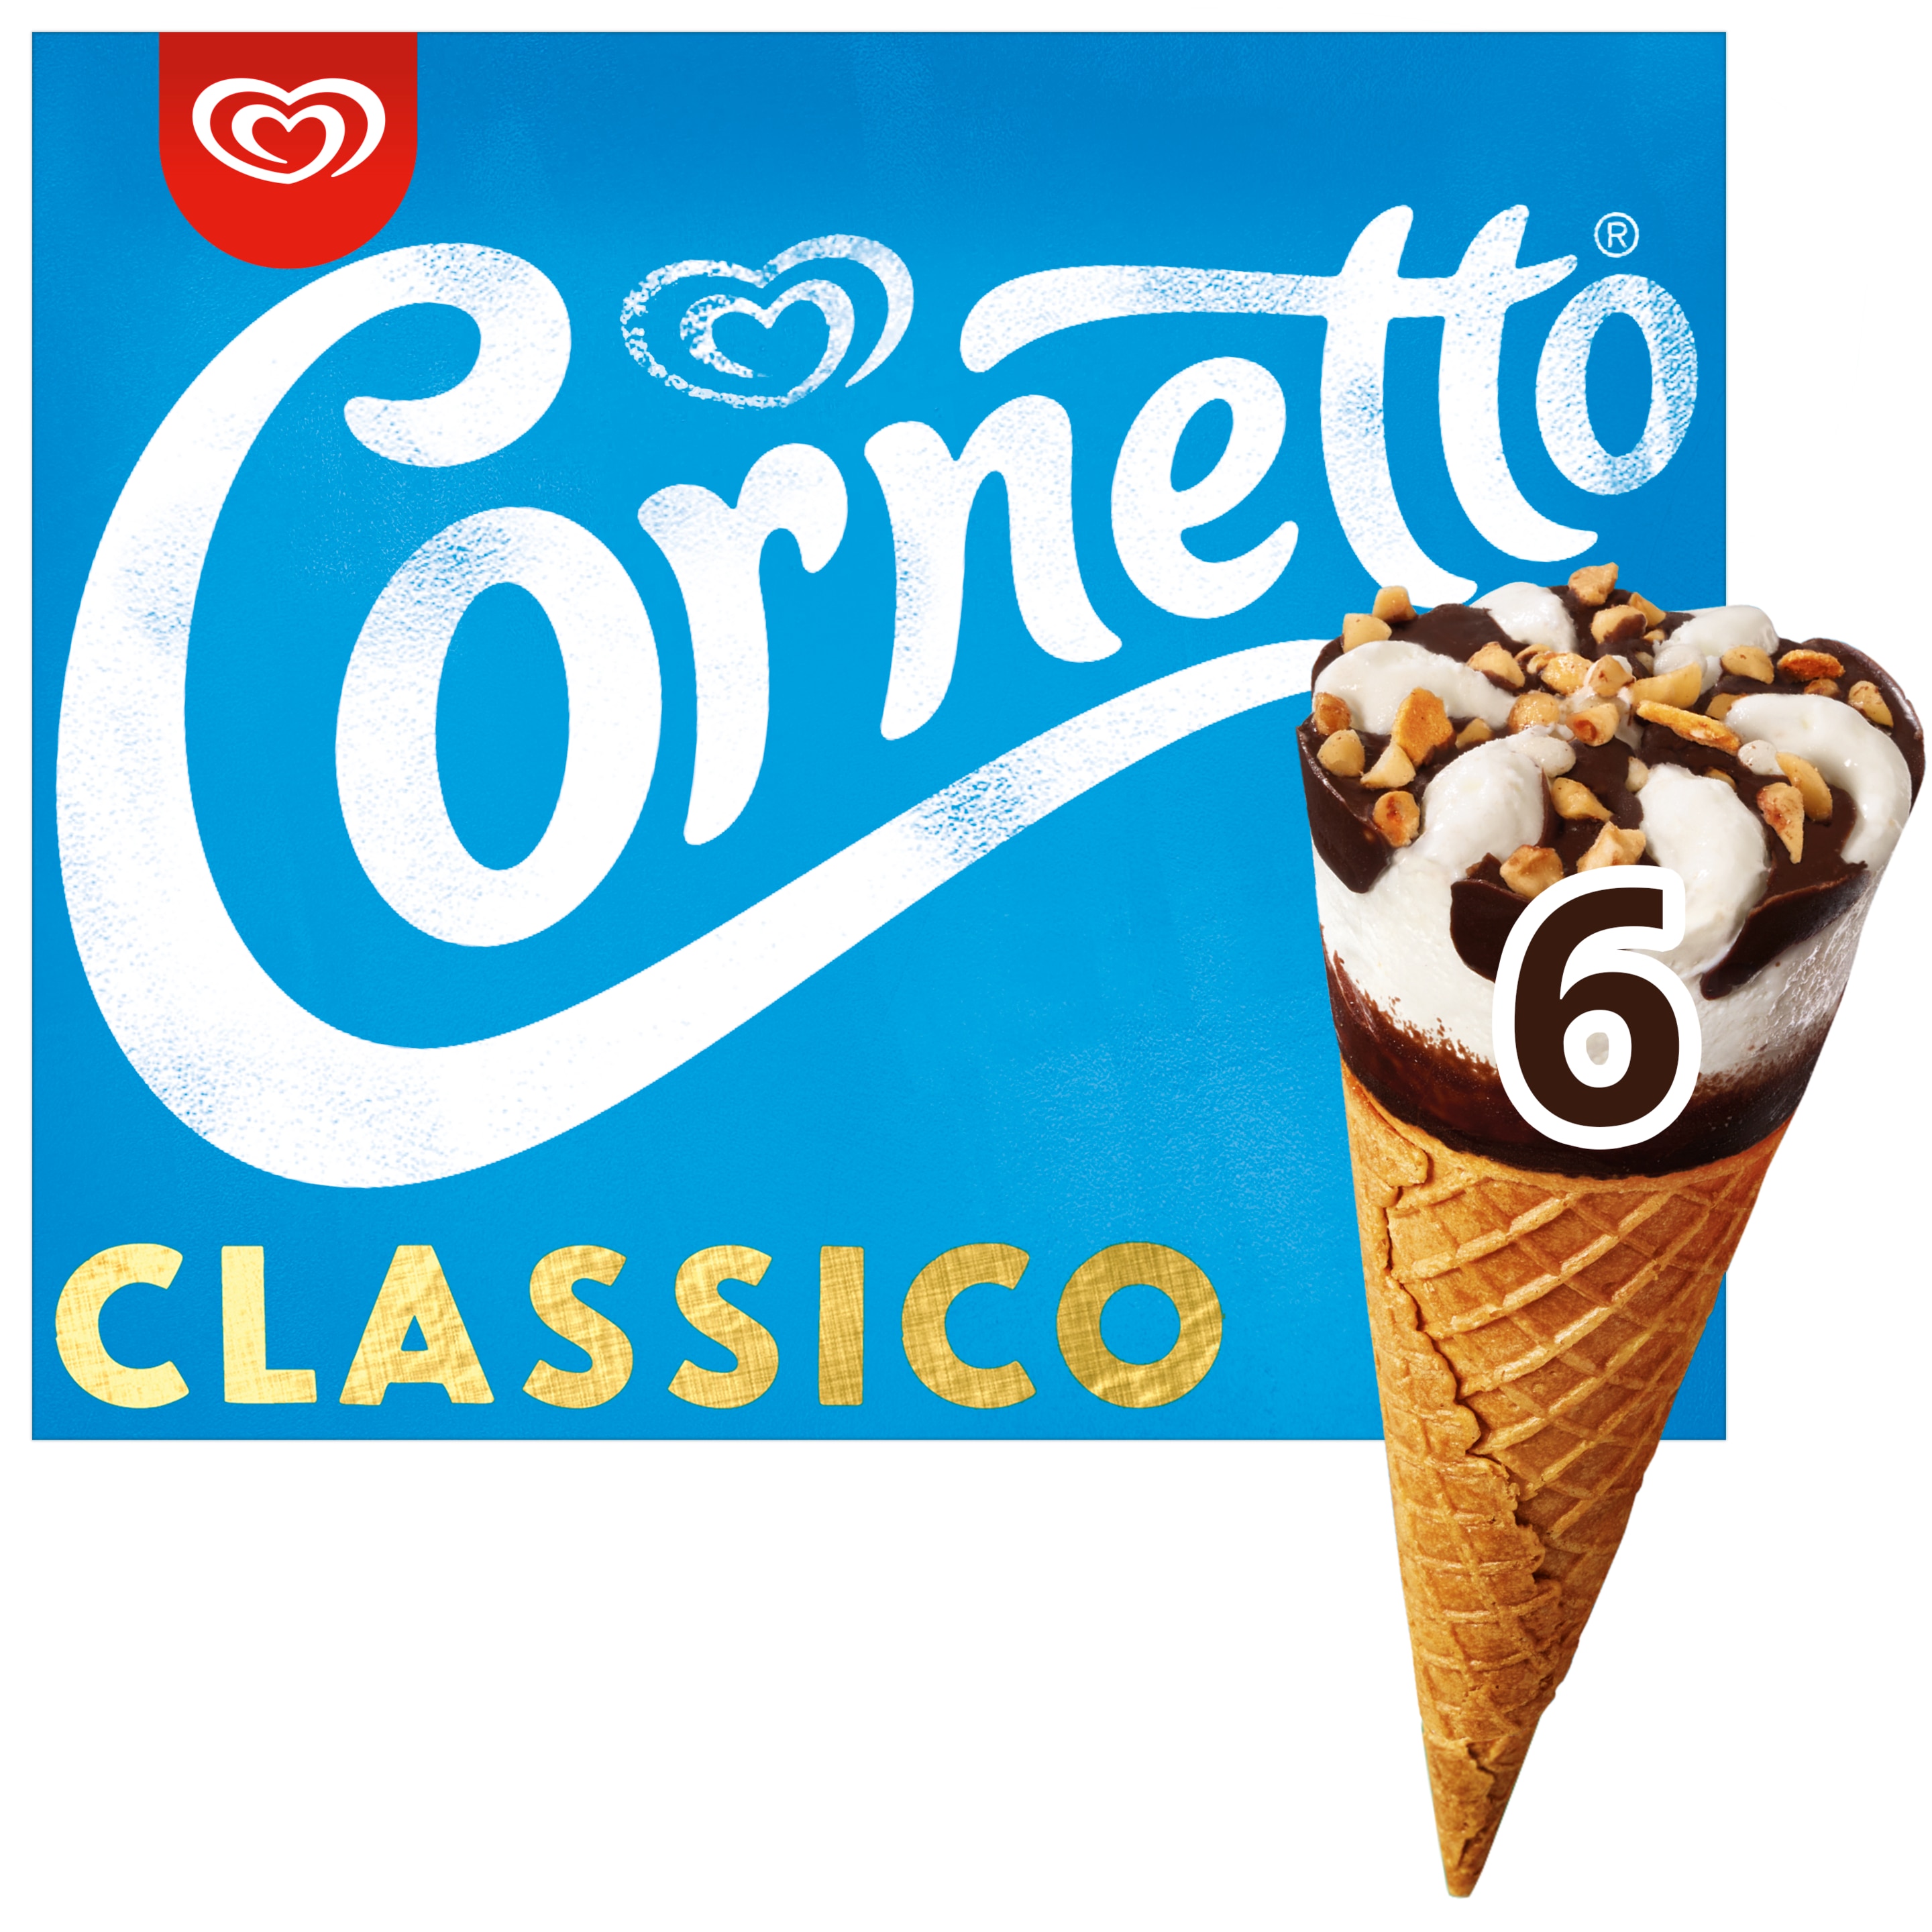 Cornetto Classico 6 x 90 ml